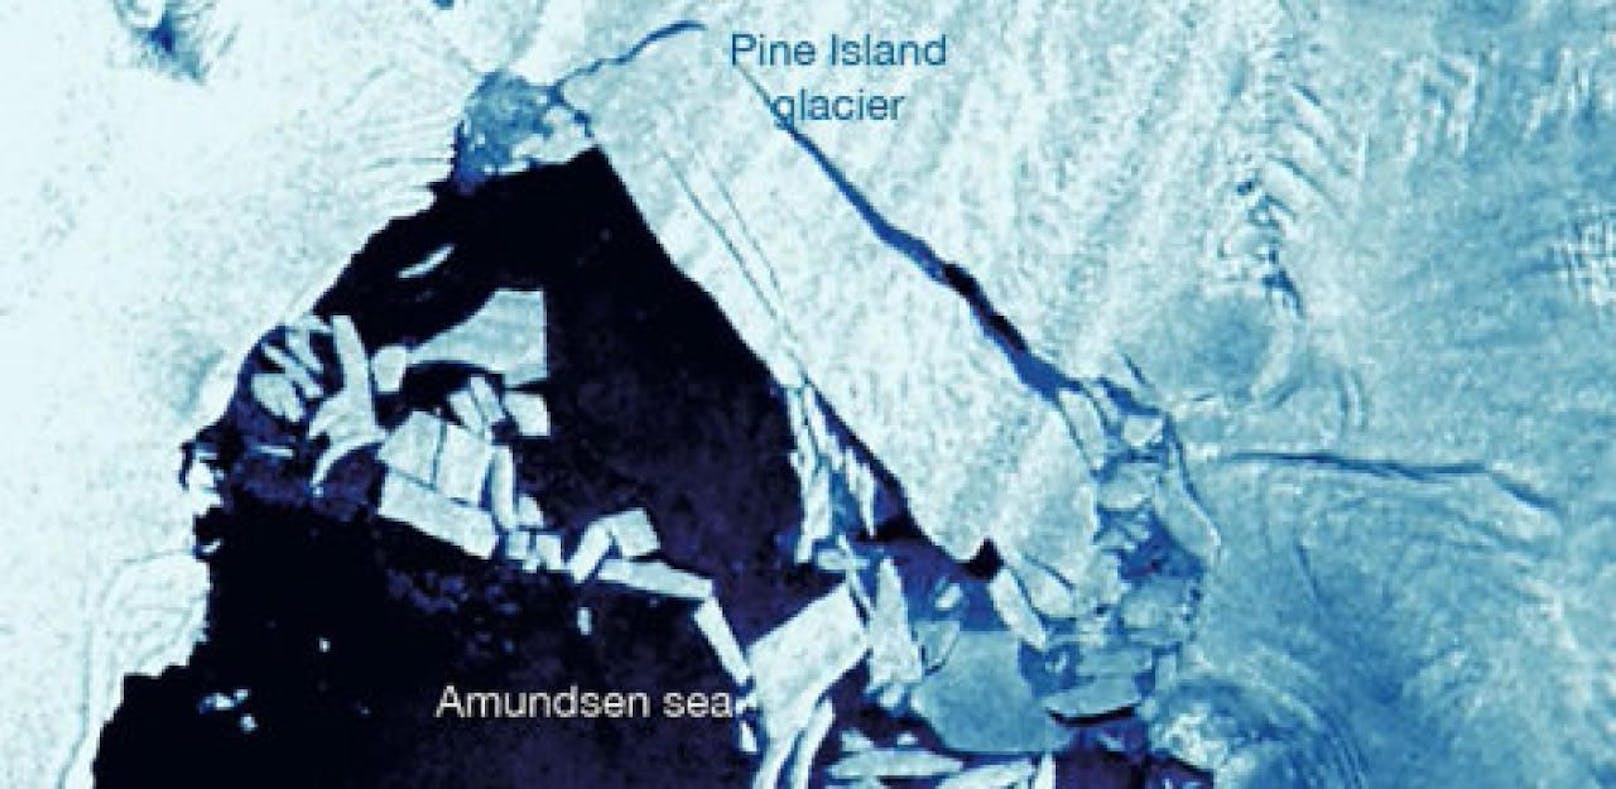 Es ist schon wieder passiert: Vom Pine-Island-Gletscher (PIG) in der Antarktis hat sich ein Eisberg gelöst. Es ist das zweite Mal innerhalb eines Jahres, dass dort riesige Eismassen abgebrochen sind